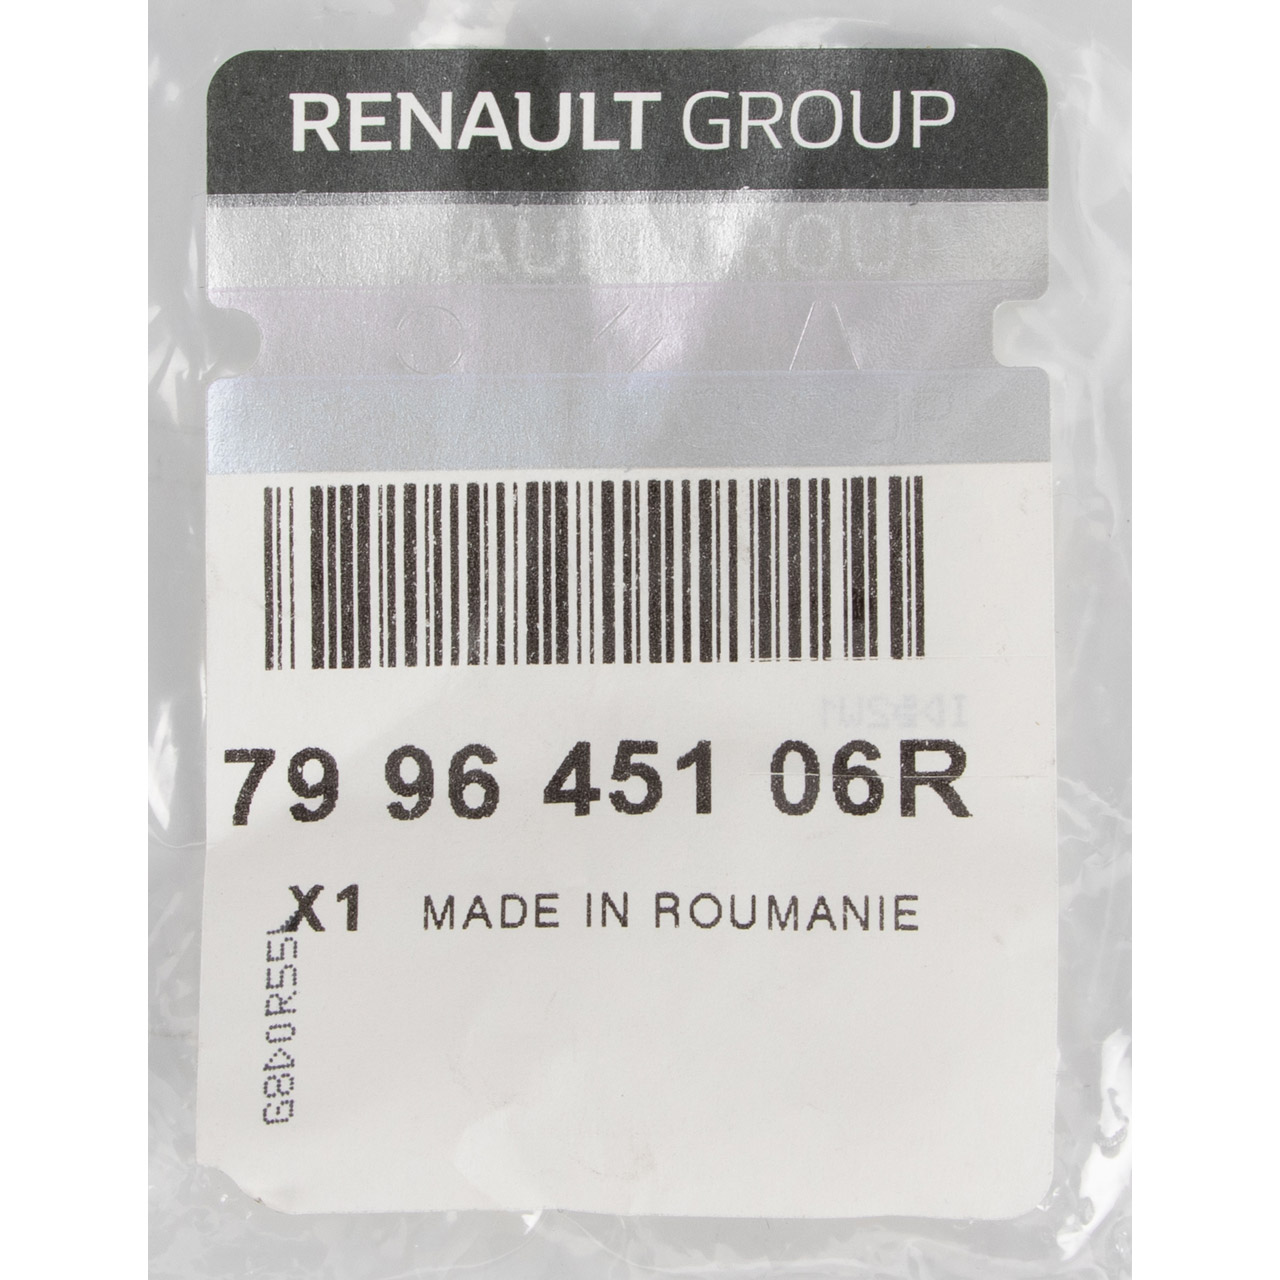 ORIGINAL Renault Befestigung Hutablage Kofferraum Twingo 3 hinten 799645106R